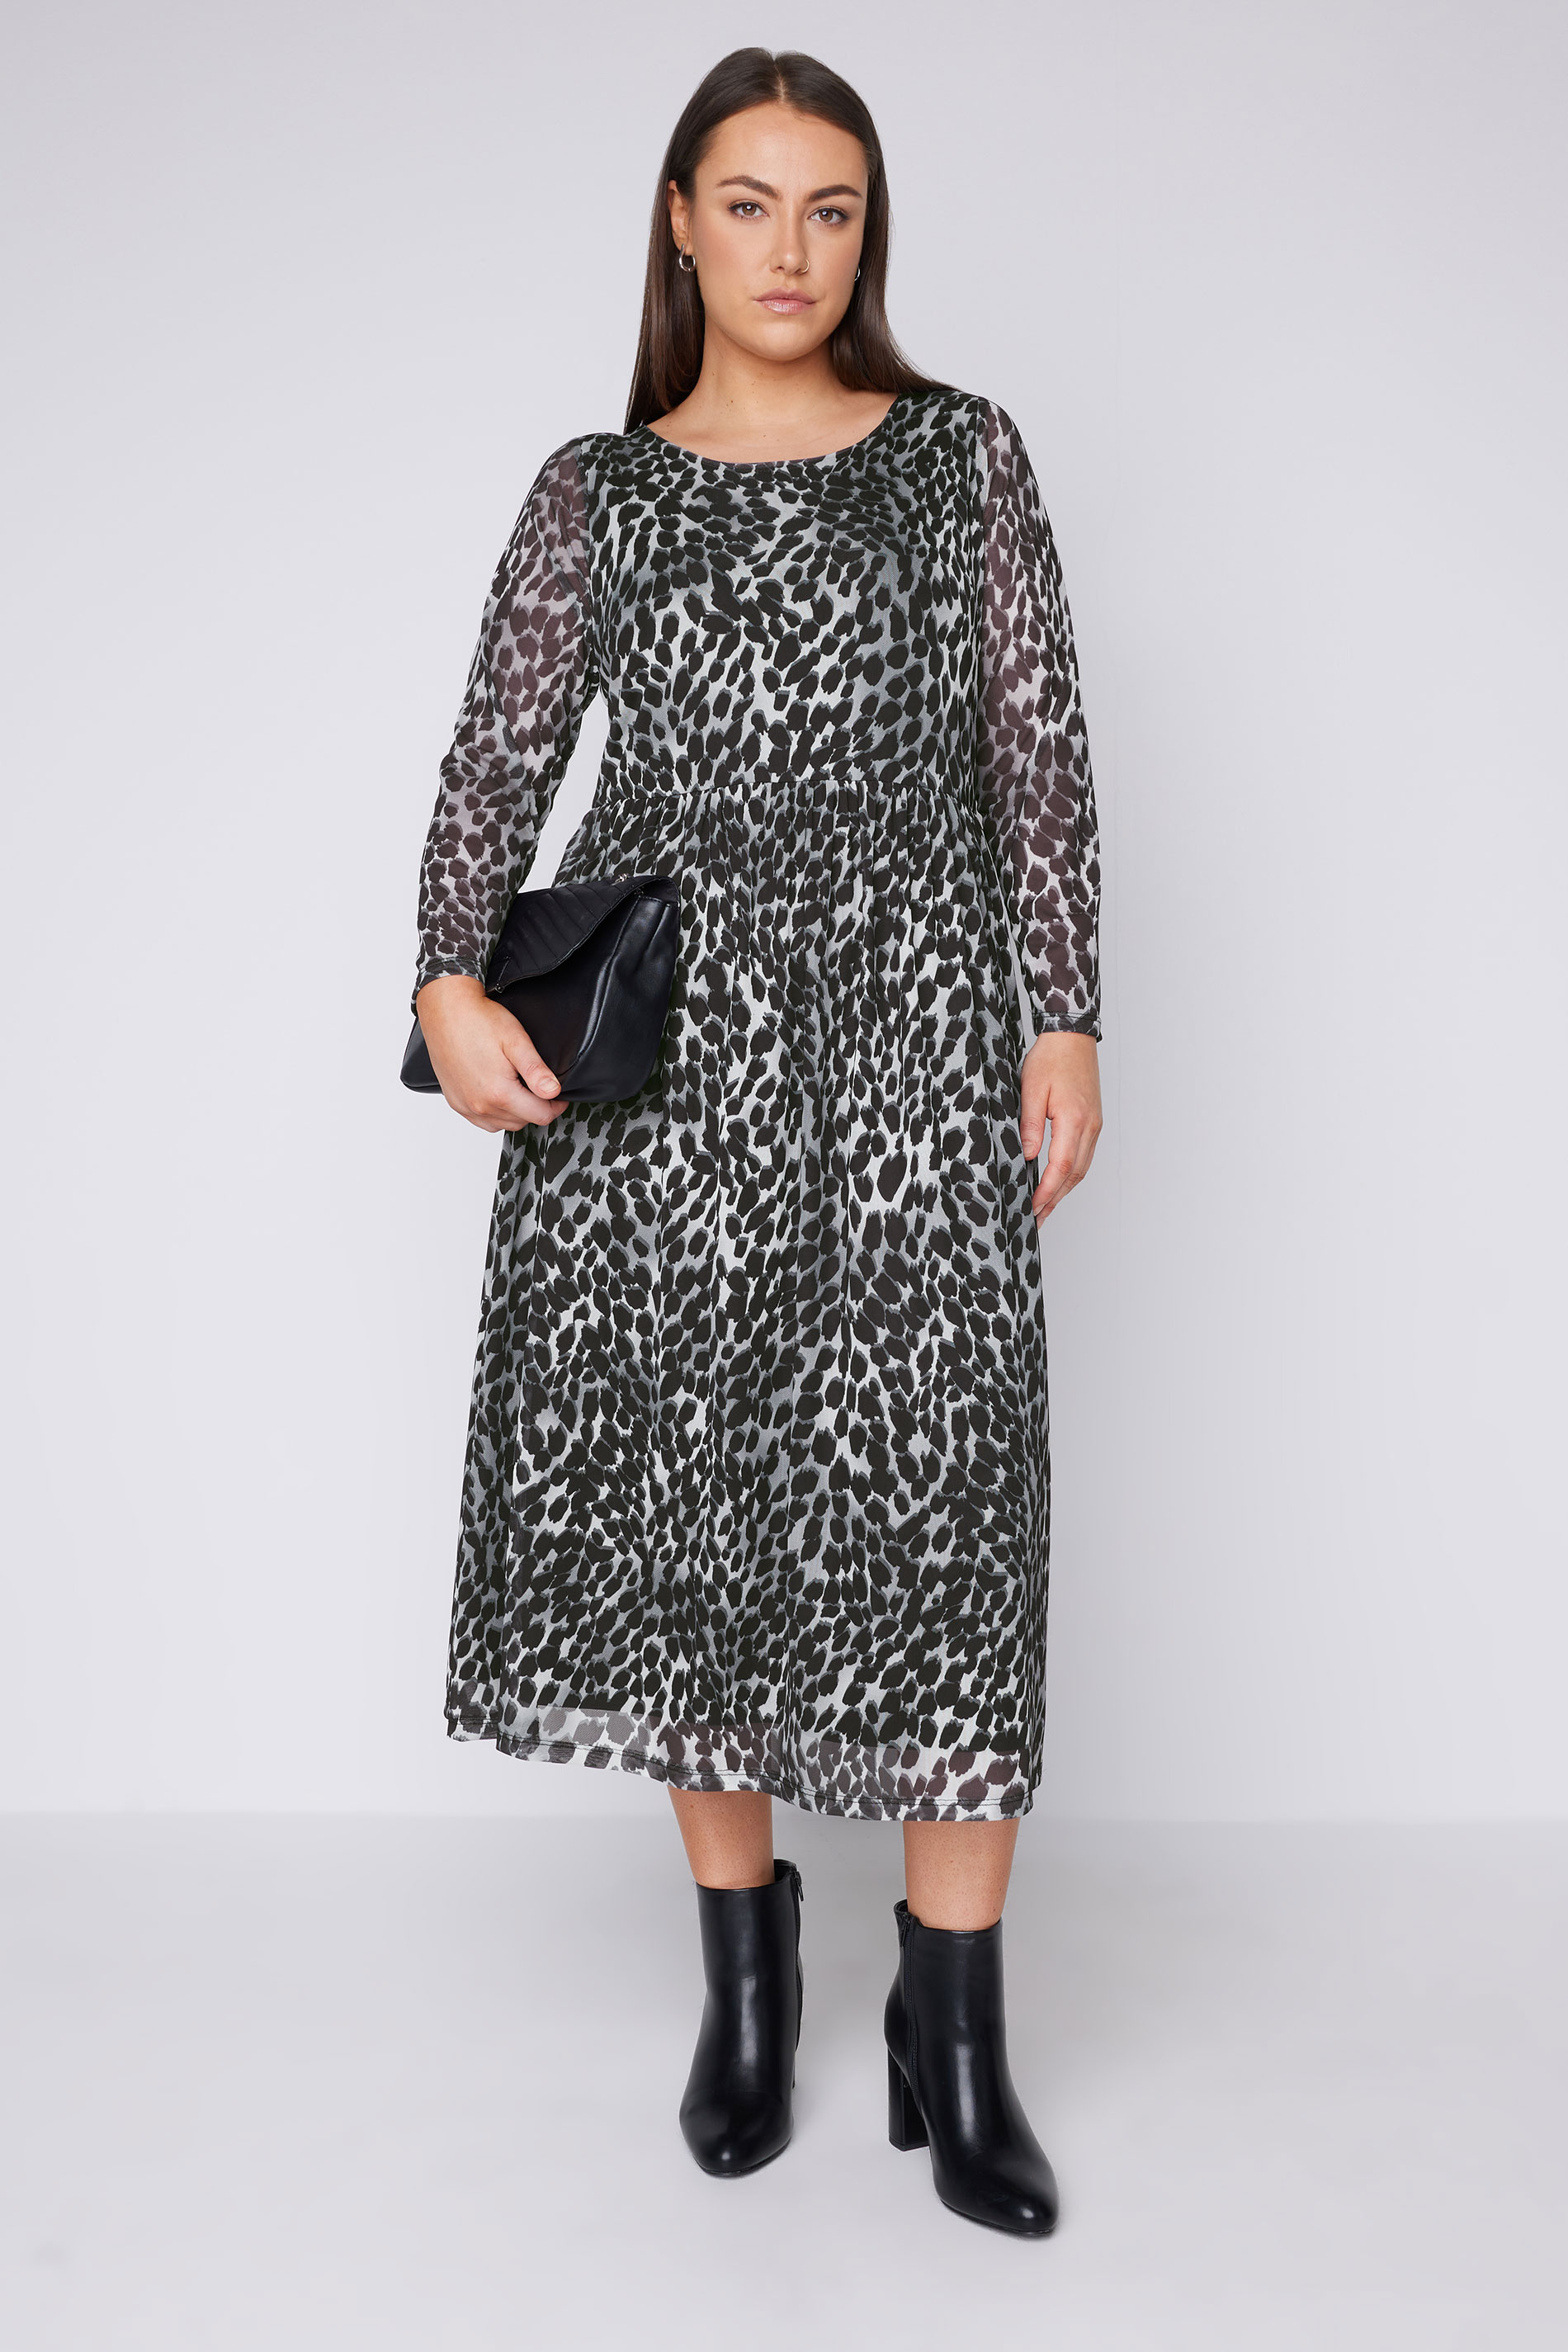 EVANS Plus Size Grey Leopard Print Mesh Midaxi Dress | Evans  1